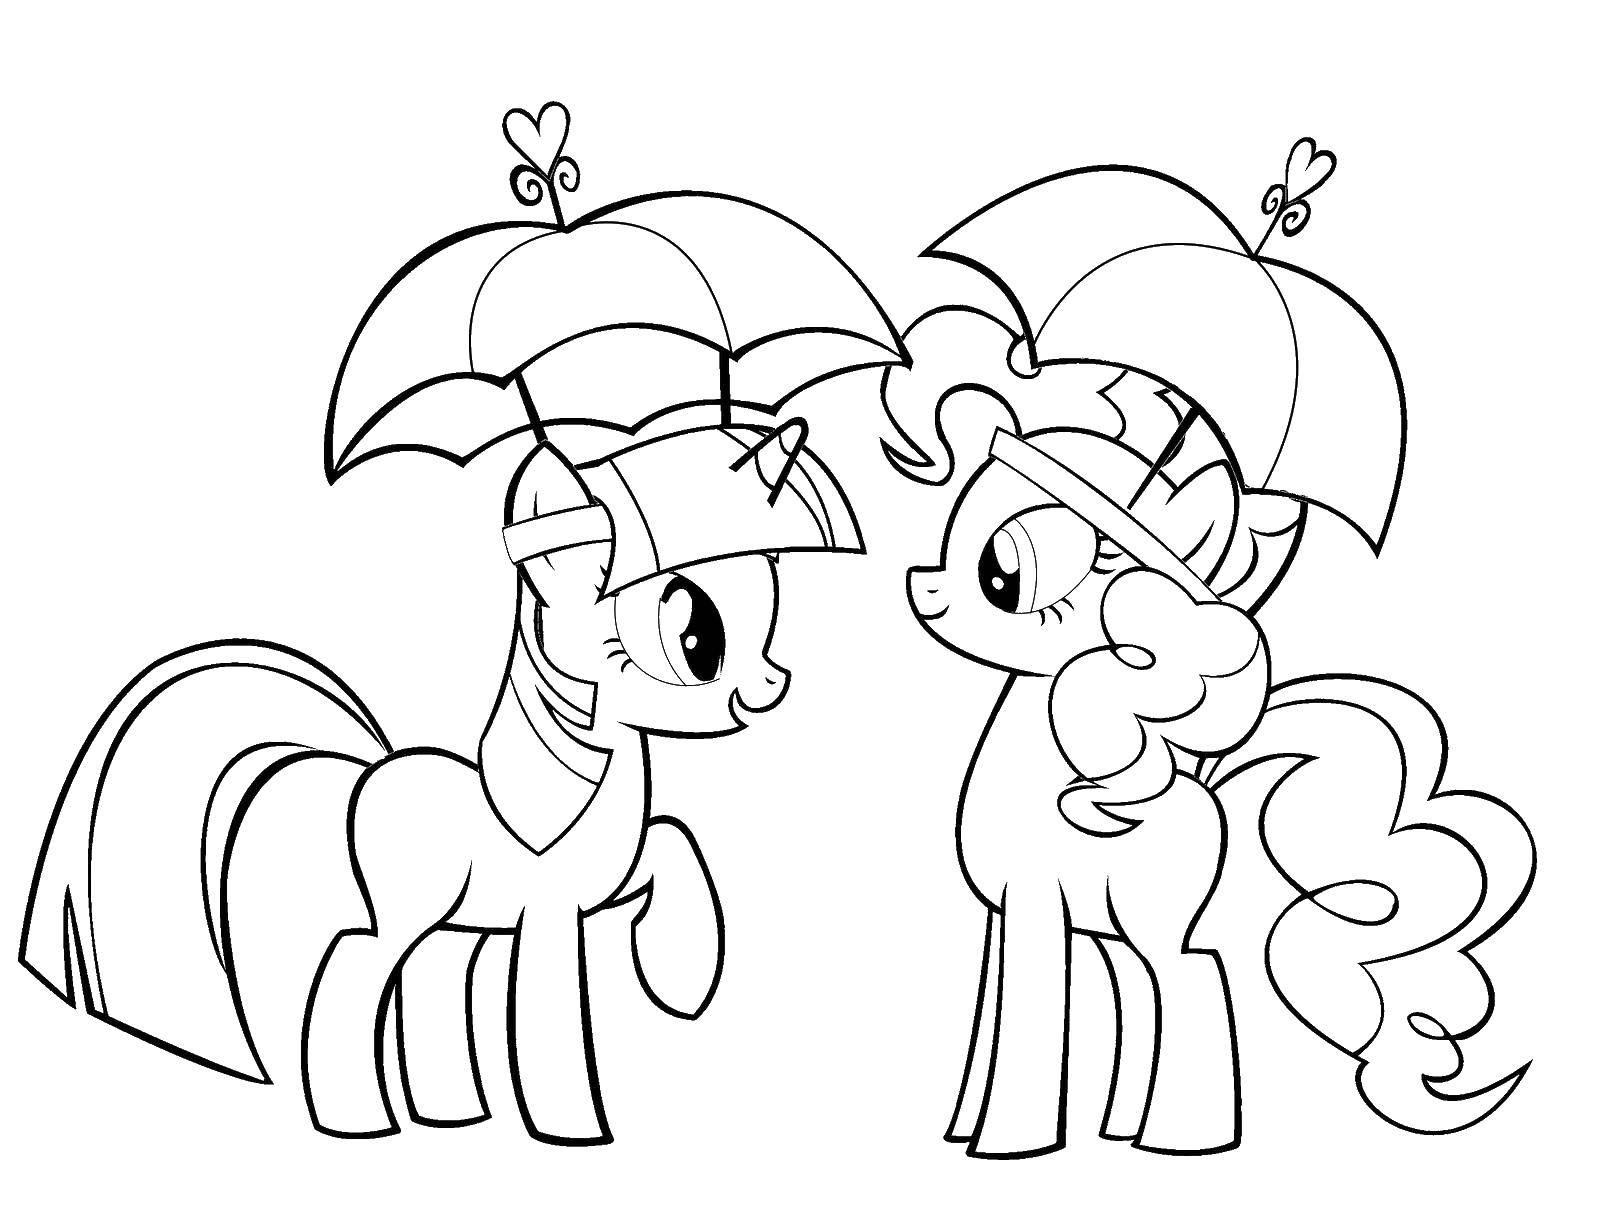 Опис: розмальовки  Крихітки поні. Категорія: мій маленький поні. Теги:  Поні, My lіttle pony .